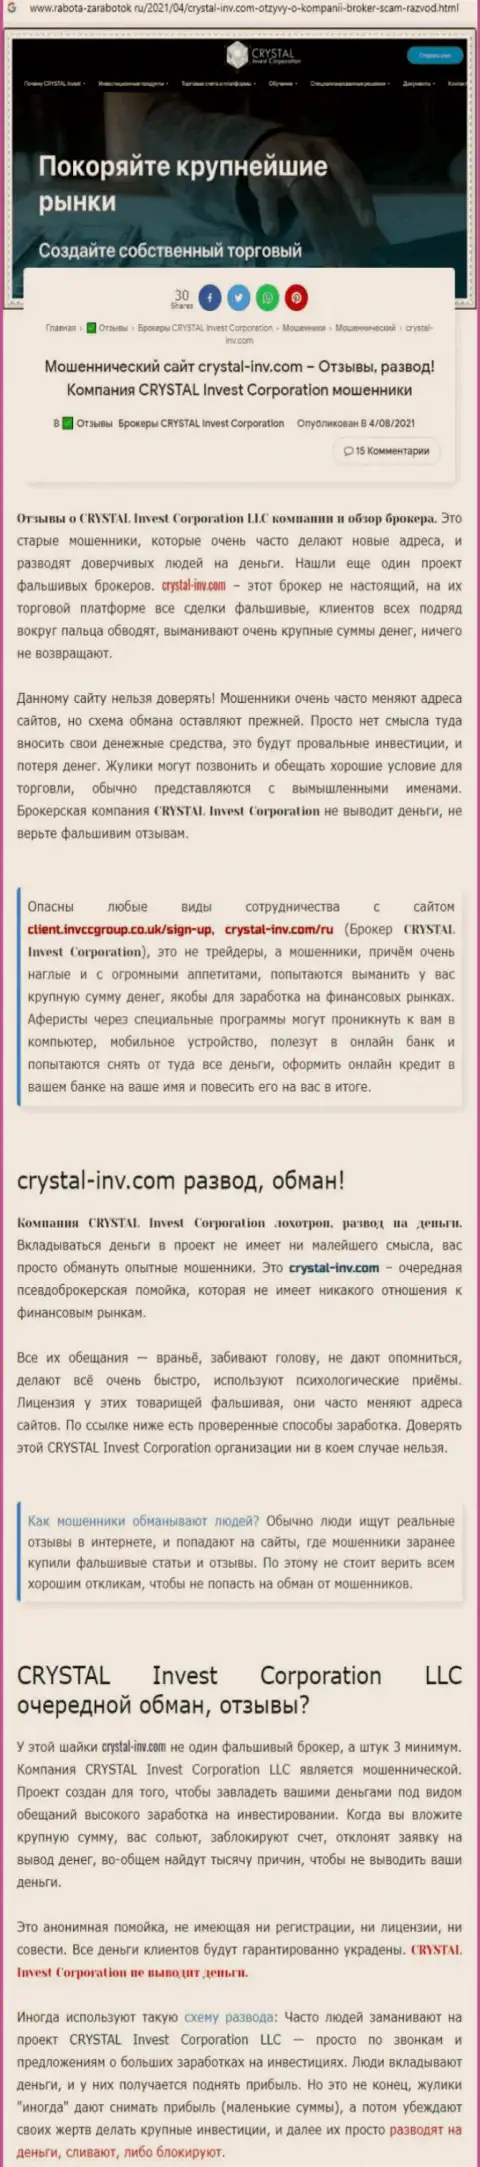 Материал, разоблачающий контору Crystal-Inv Com, позаимствованный с сервиса с обзорами разных компаний